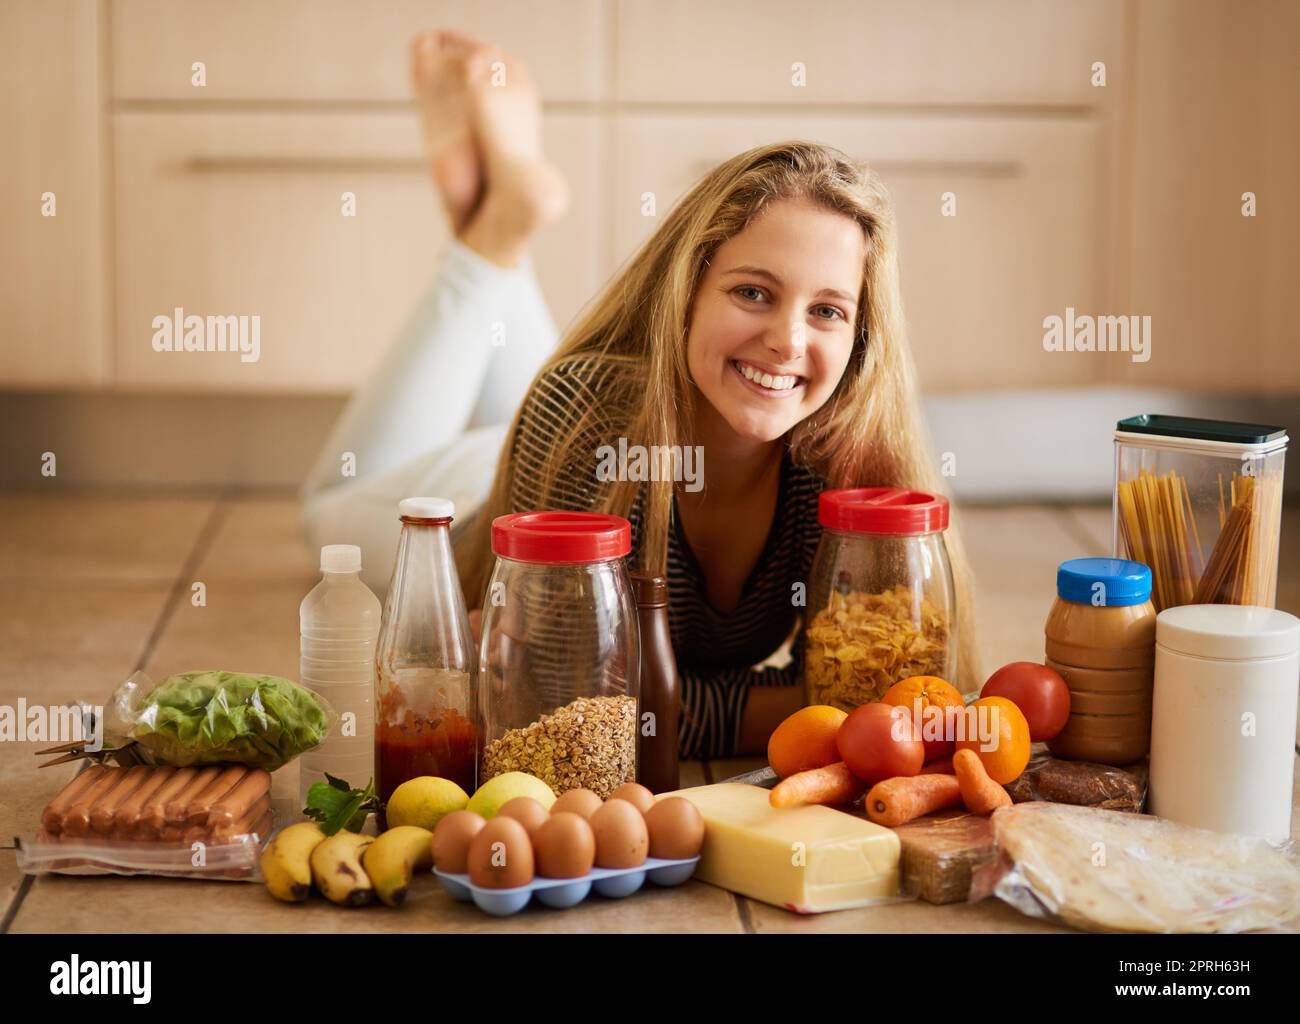 Ich trete gesunde Entscheidungen, wenn es um mein Essen geht. Eine attraktive junge Frau, umgeben von verschiedenen Lebensmitteln in der Küche zu Hause. Stockfoto